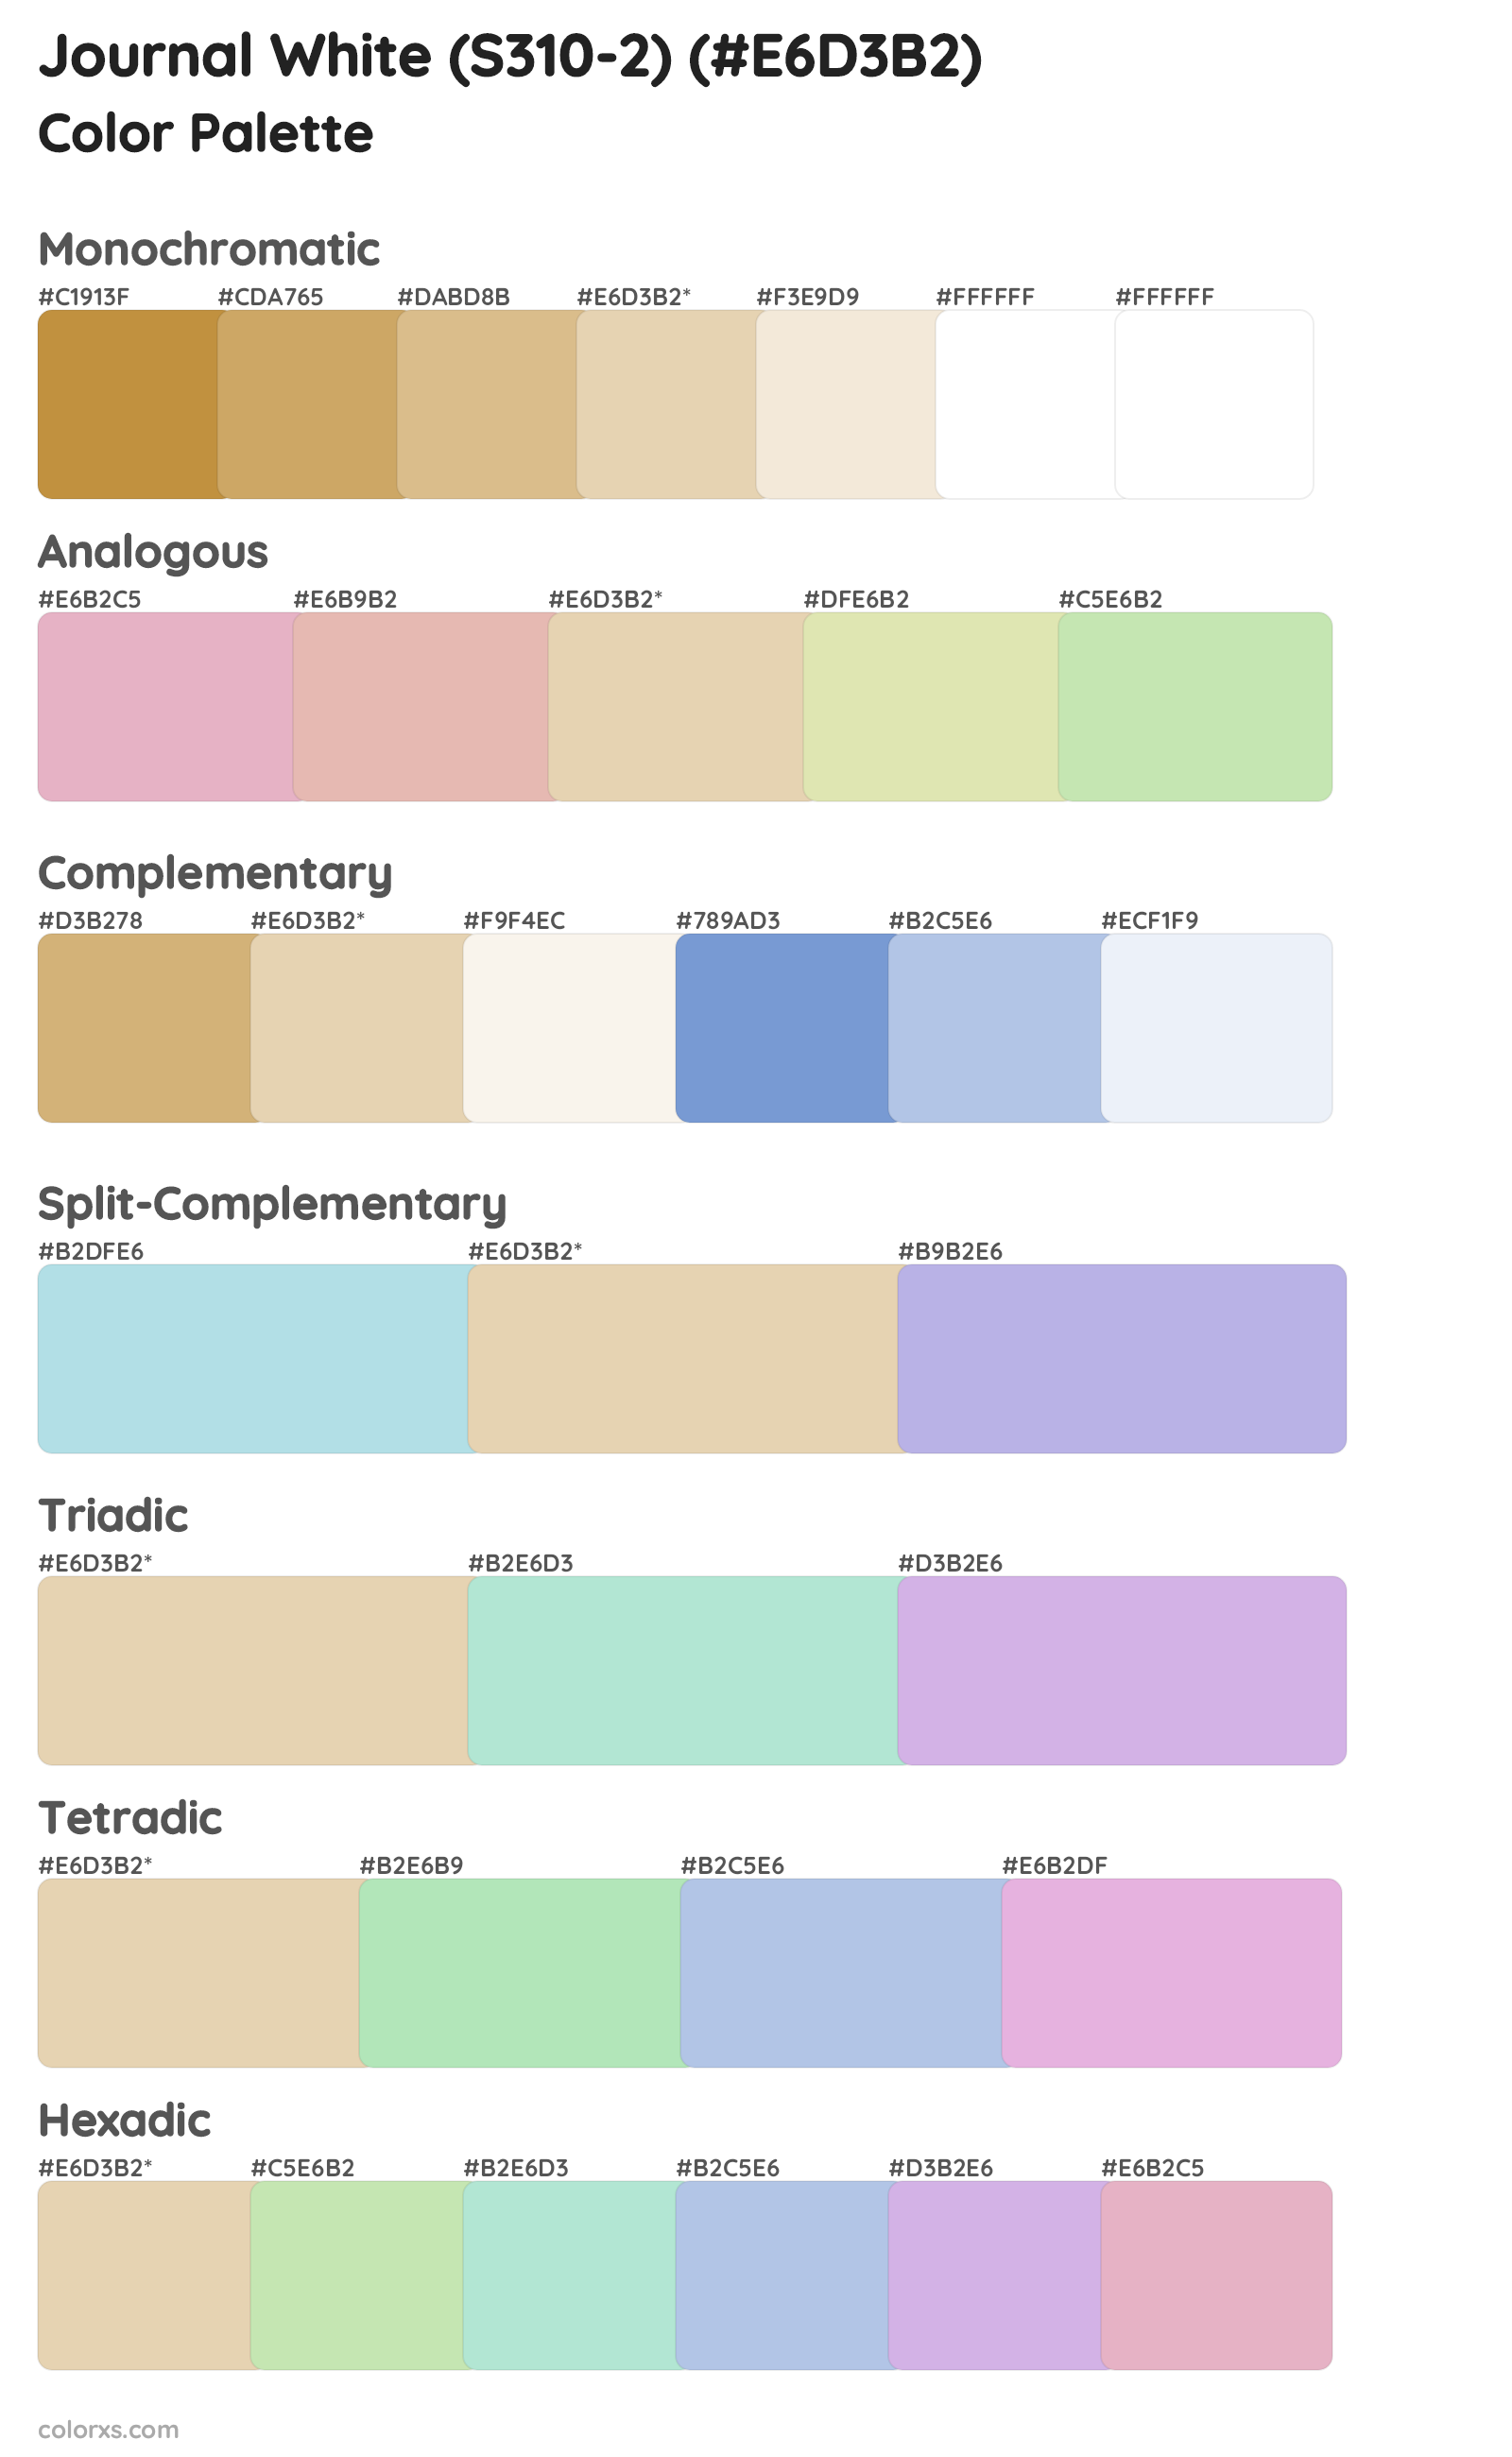 Journal White (S310-2) Color Scheme Palettes